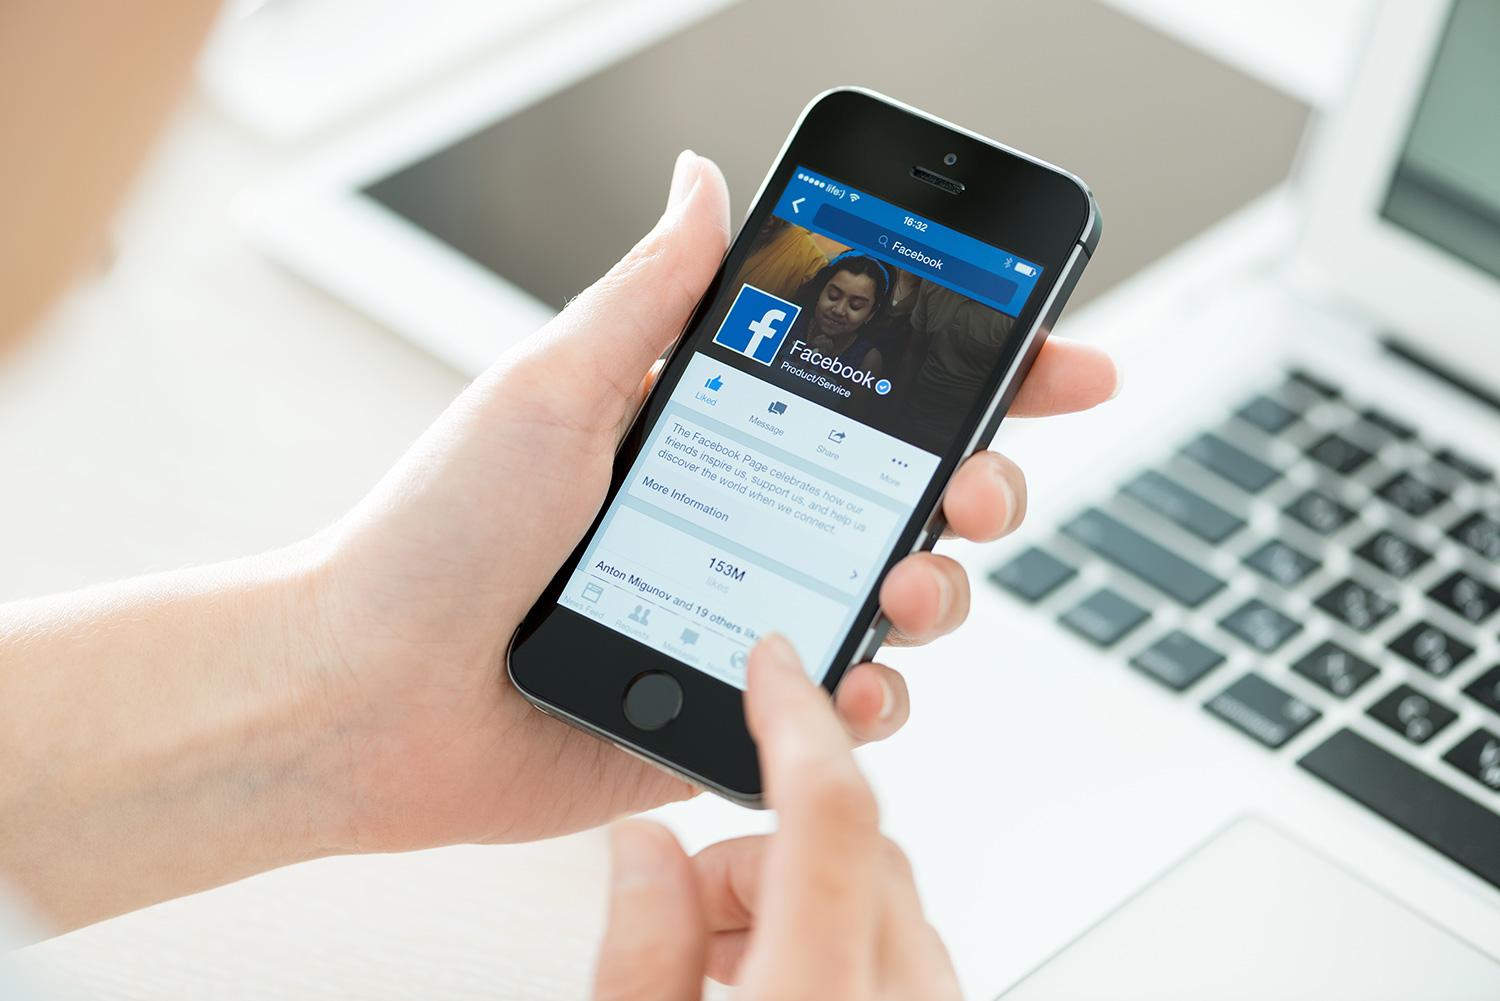 الفيسبوك تطلق رسميًا الإعلانات التفاعلية على شبكتها الإجتماعية كوسيلة جديدة للتفاعل مع المستخدمين